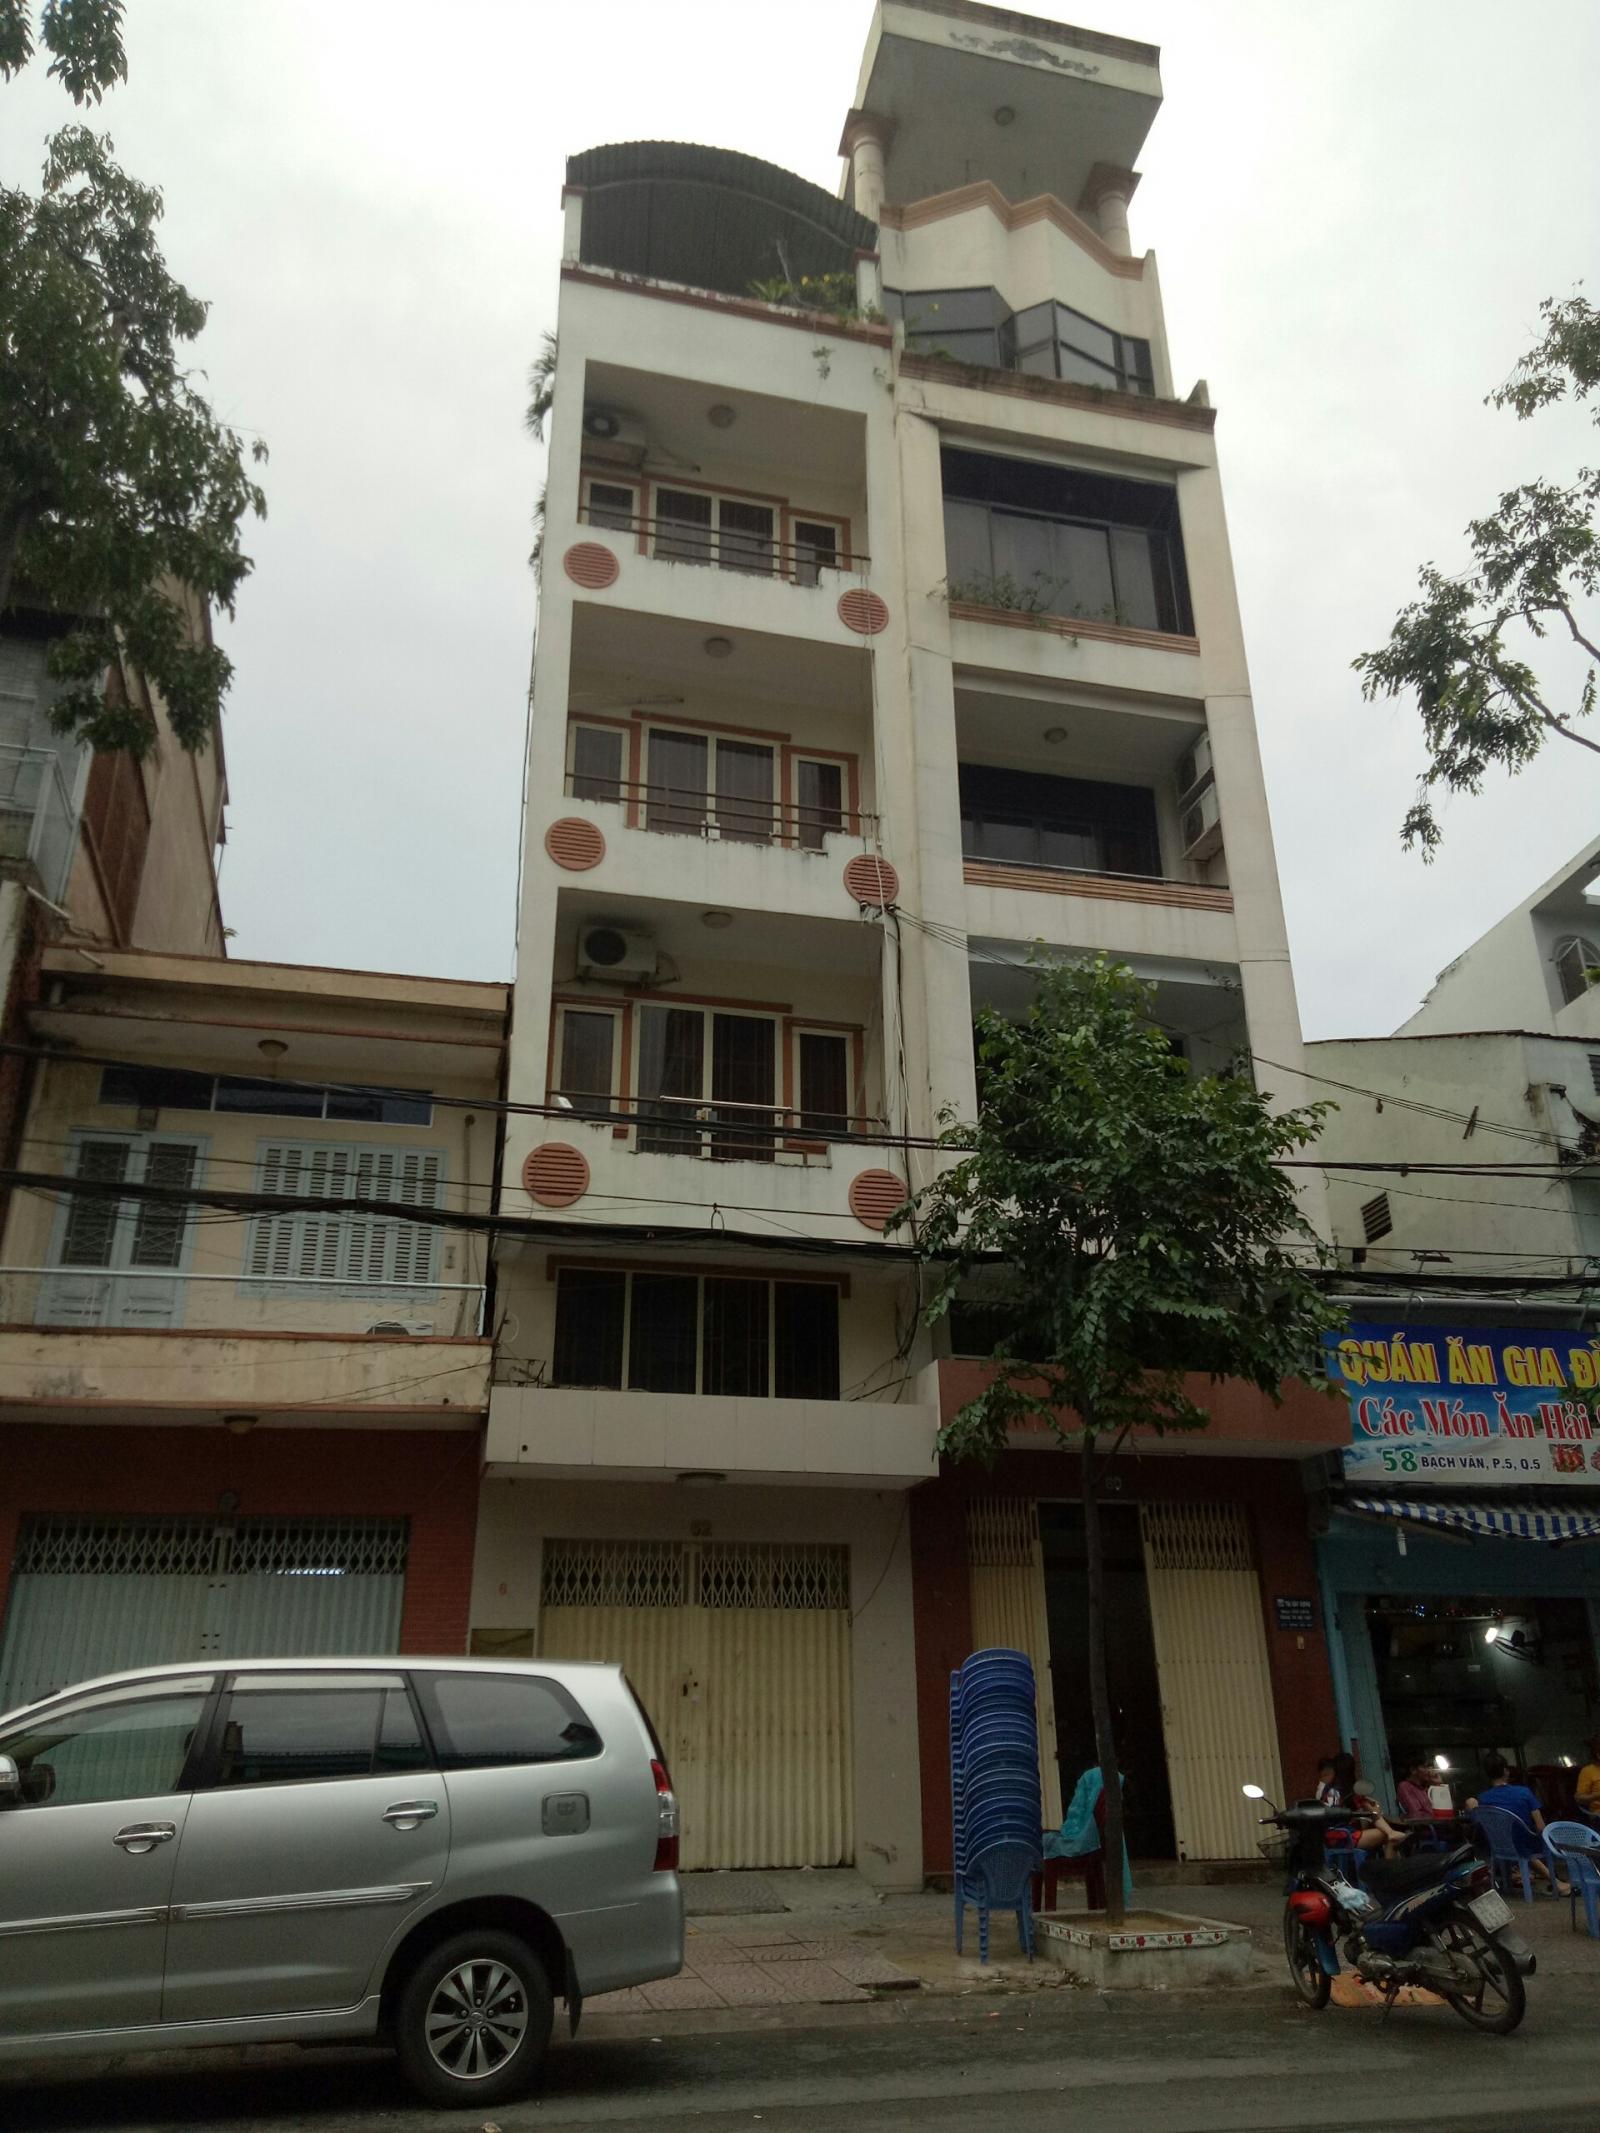  Bán nhà mặt tiền Q5, đường Lương Nhữ Học, phường 11, Q5, đang cho thuê căn hộ dịch vụ